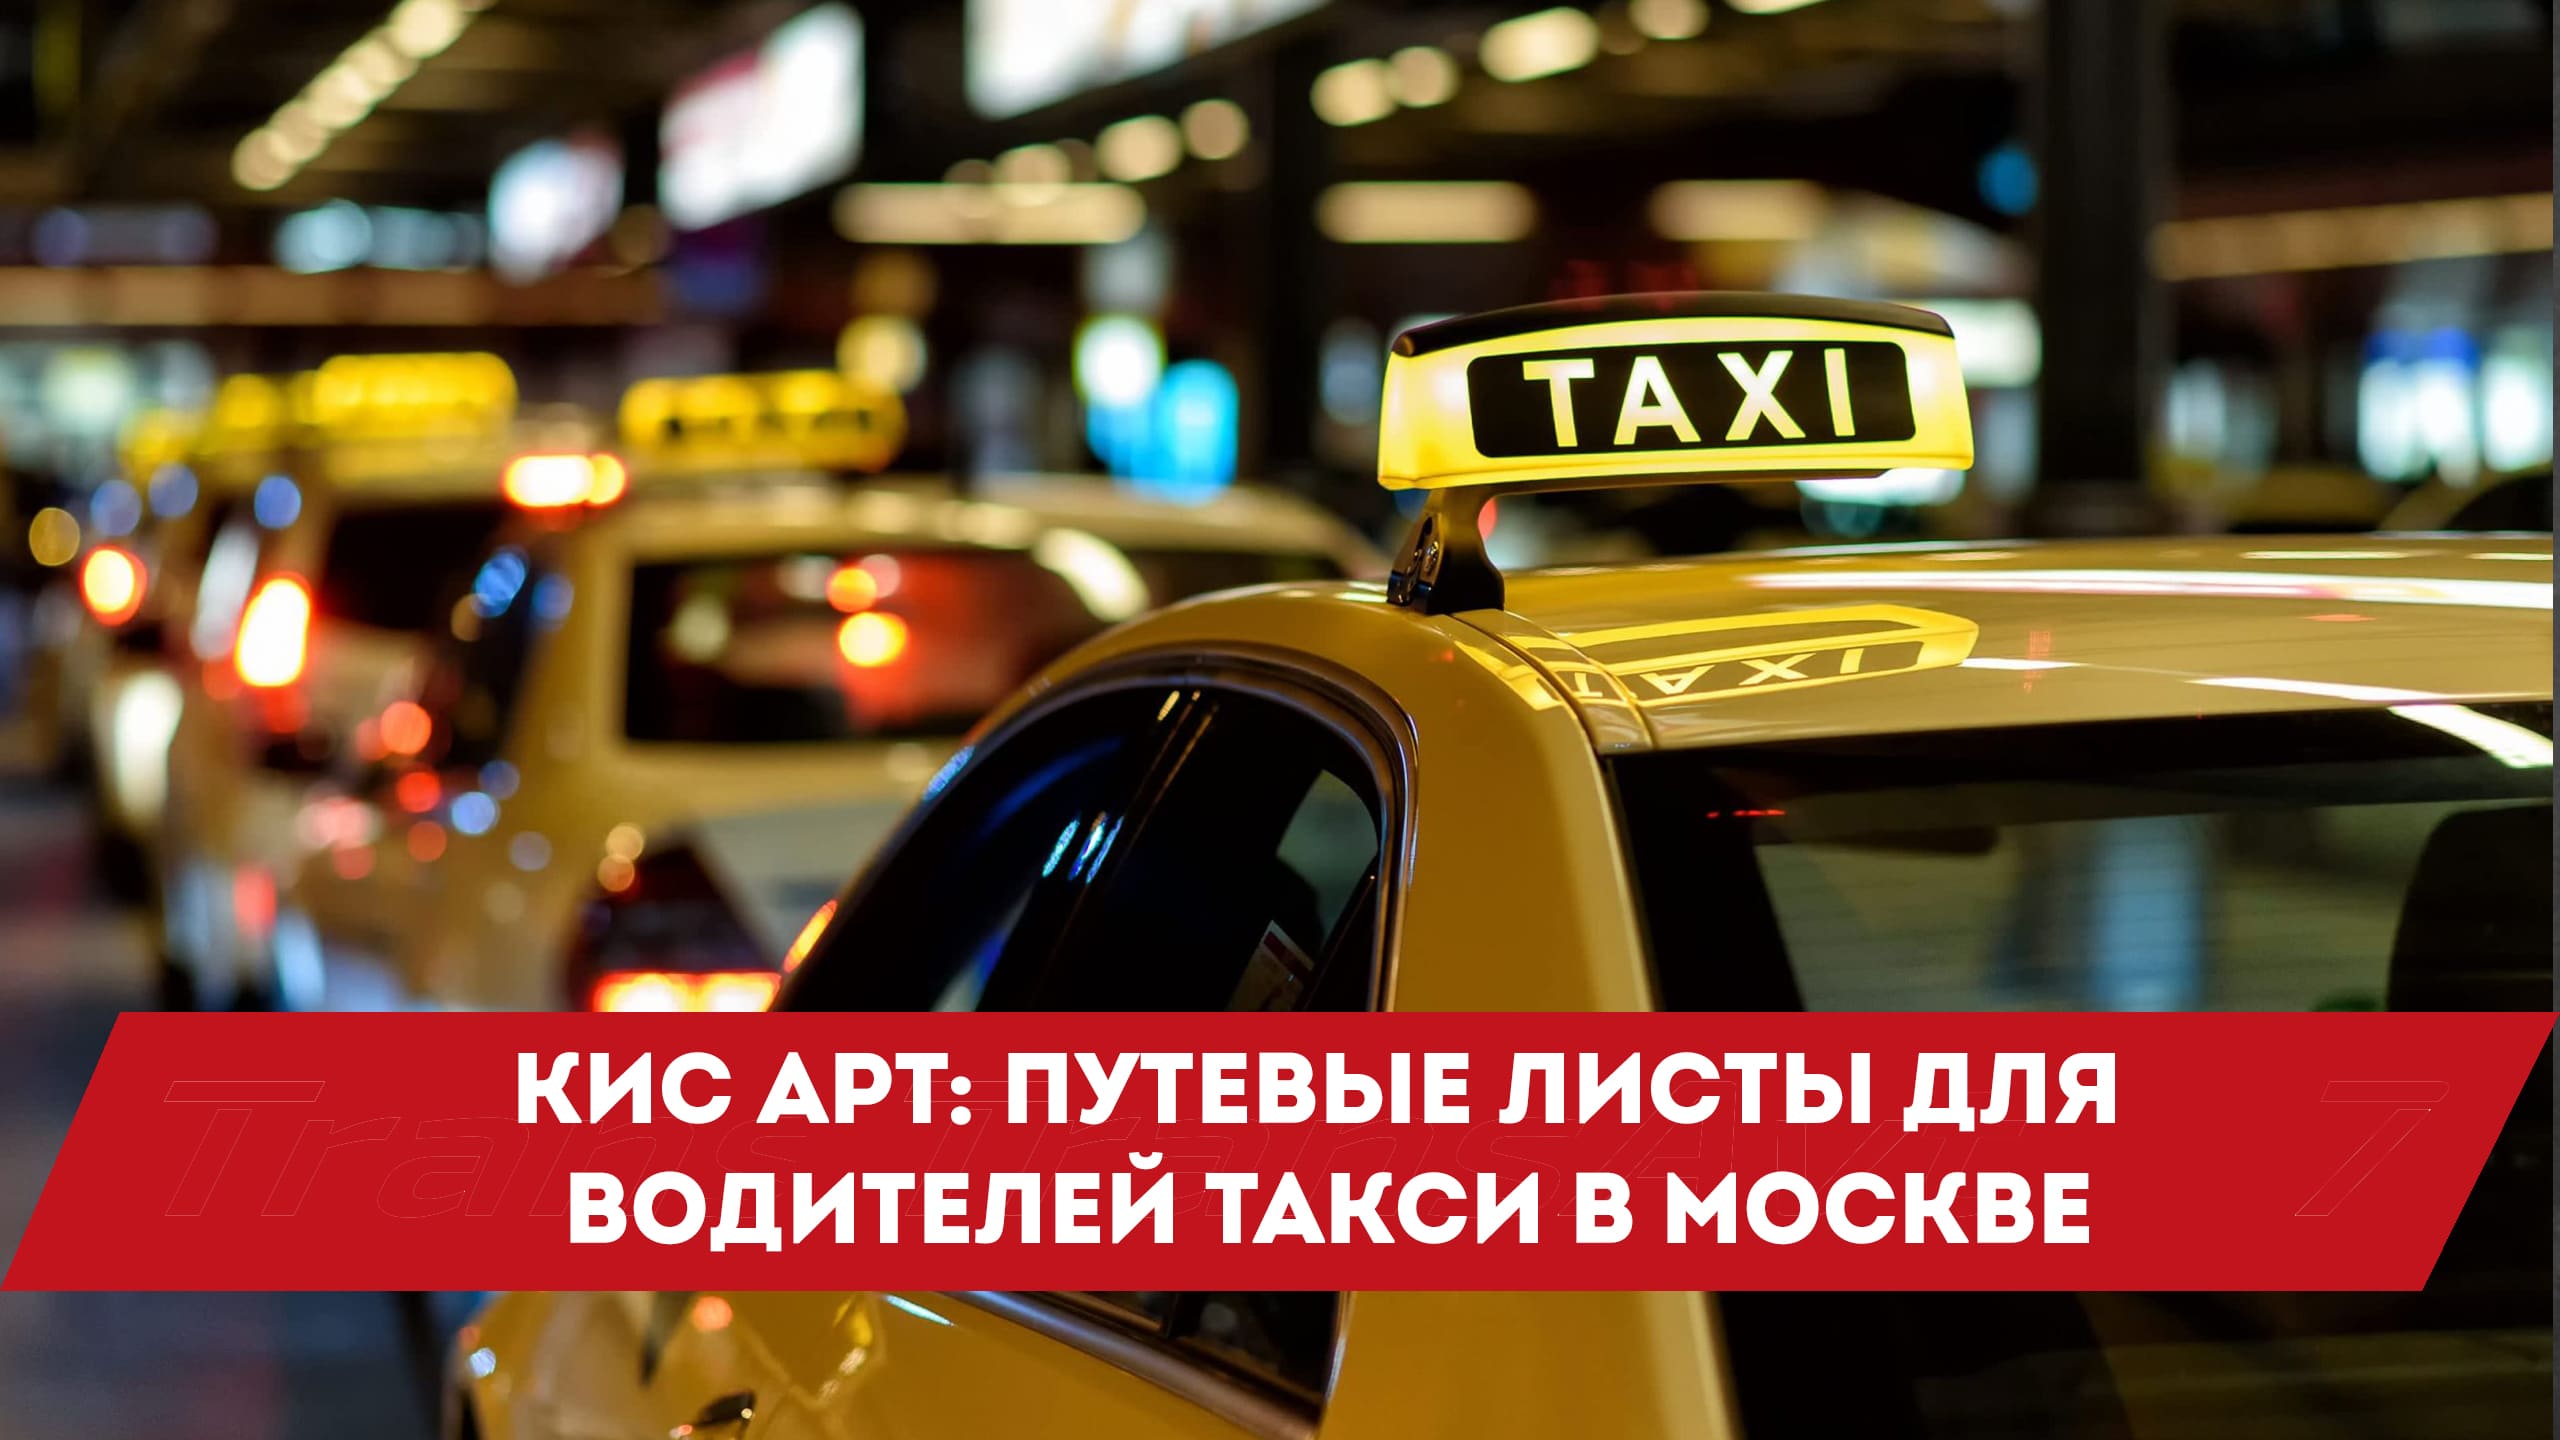 Аналитика водителей такси. Кис арт такси. Кис арт такси регистрация водителей Москва. Кисарт для такси. Кисарт для такси регистрация водителей.